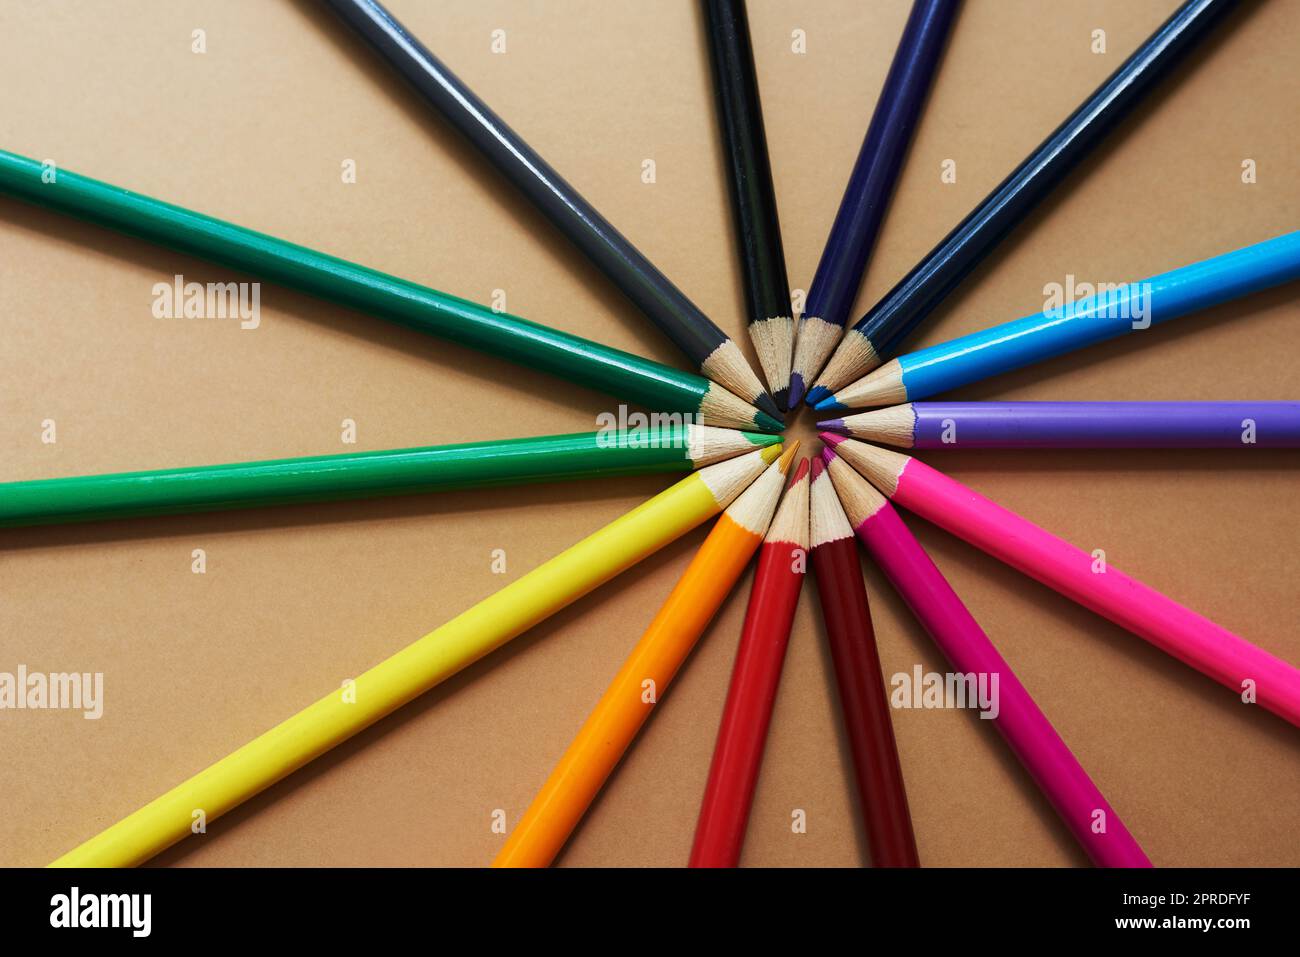 Vivete la vostra vita a colori. Studio girato di matite di colori diversi su uno sfondo marrone. Foto Stock